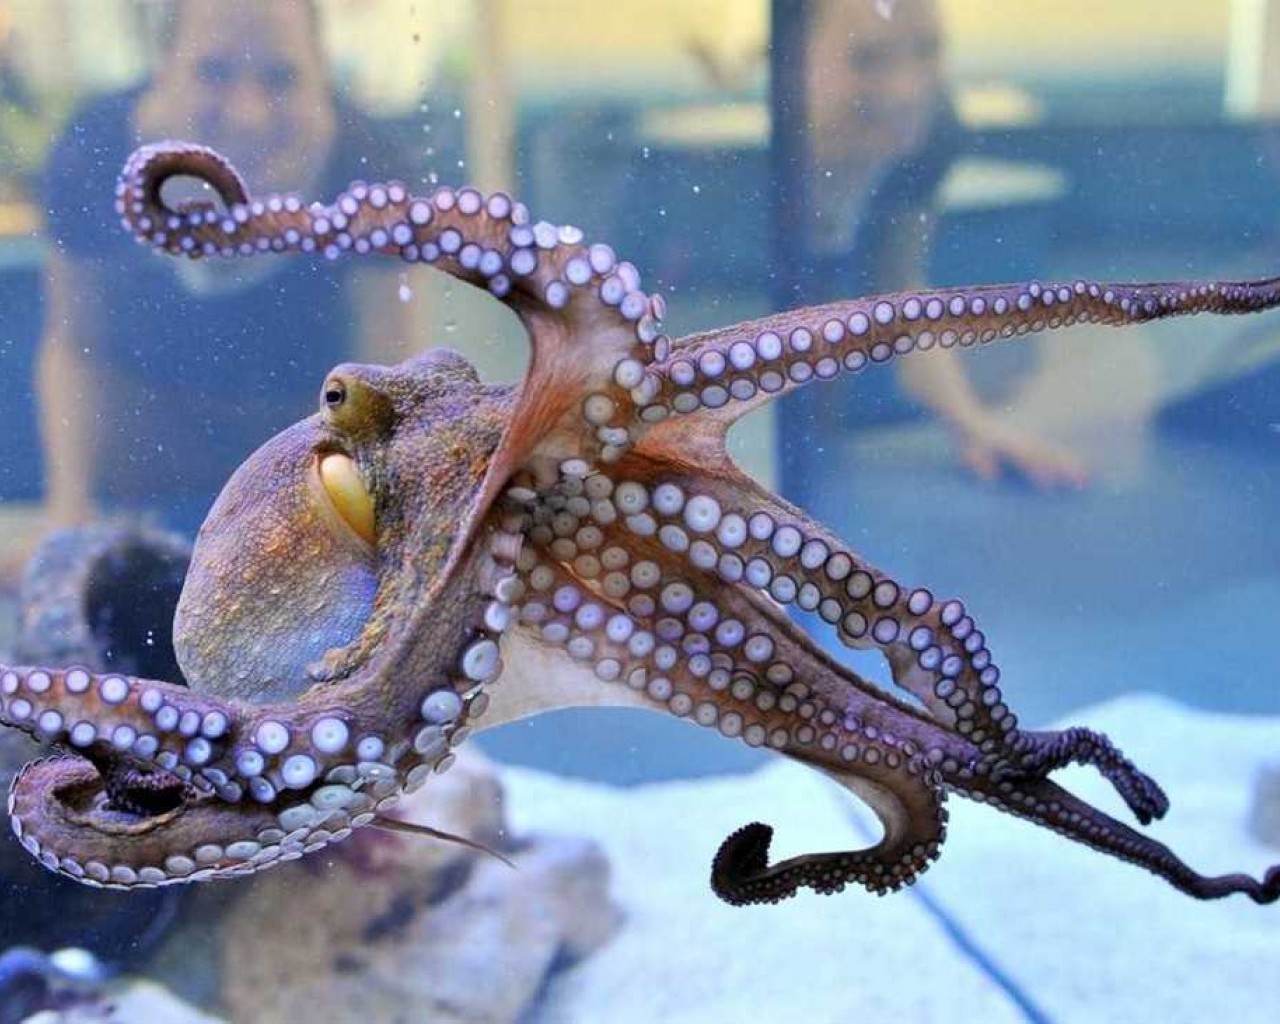 Удивительные осьминоги - их умение менять цвет, многие руки и способности